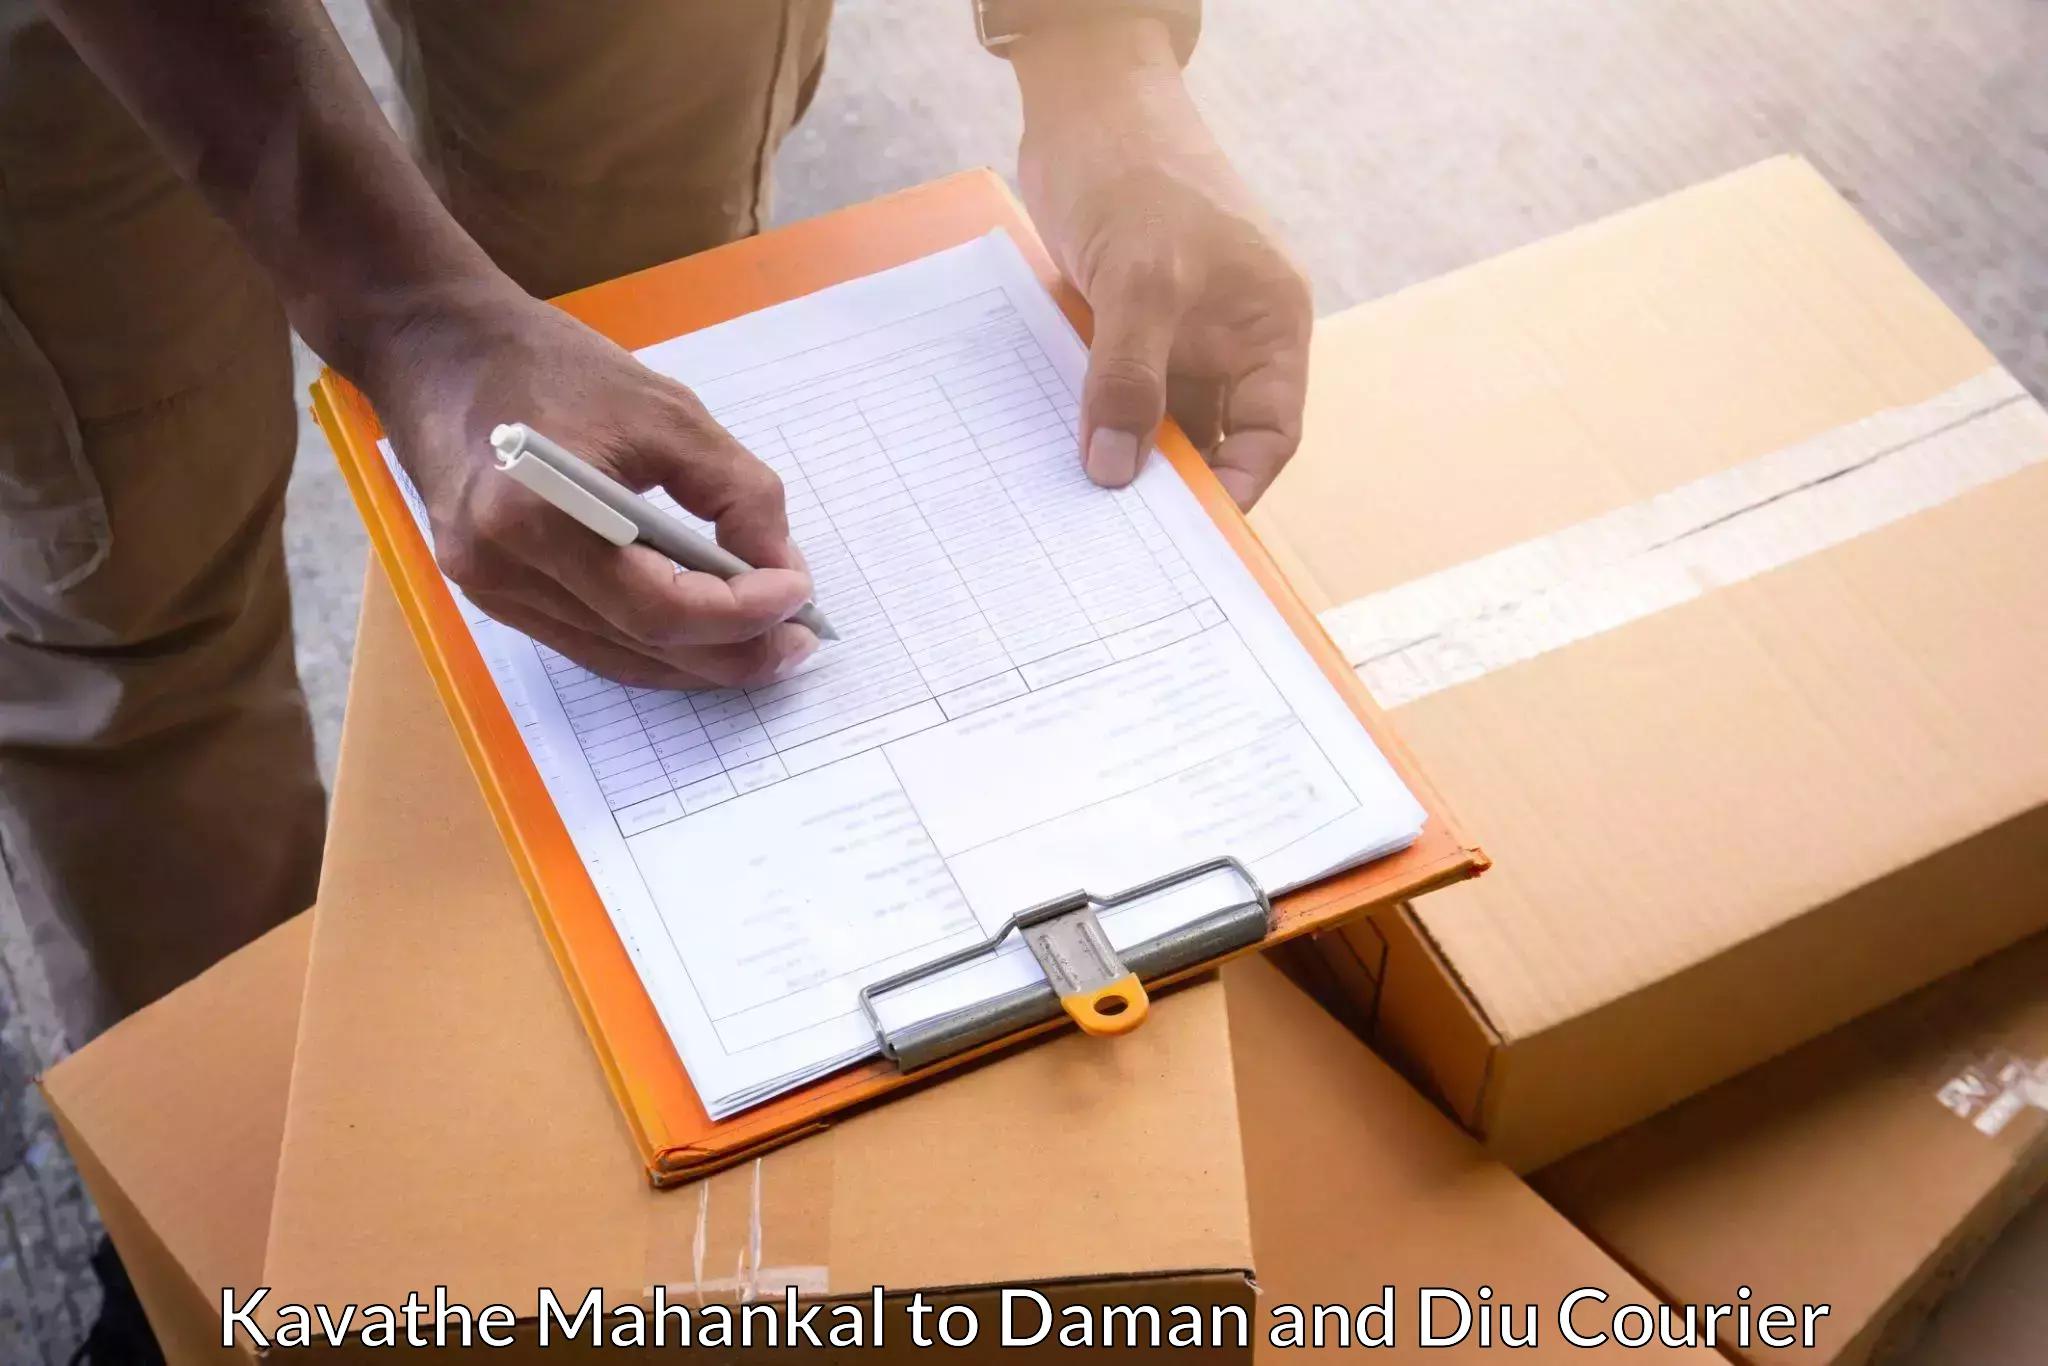 Courier insurance Kavathe Mahankal to Daman and Diu